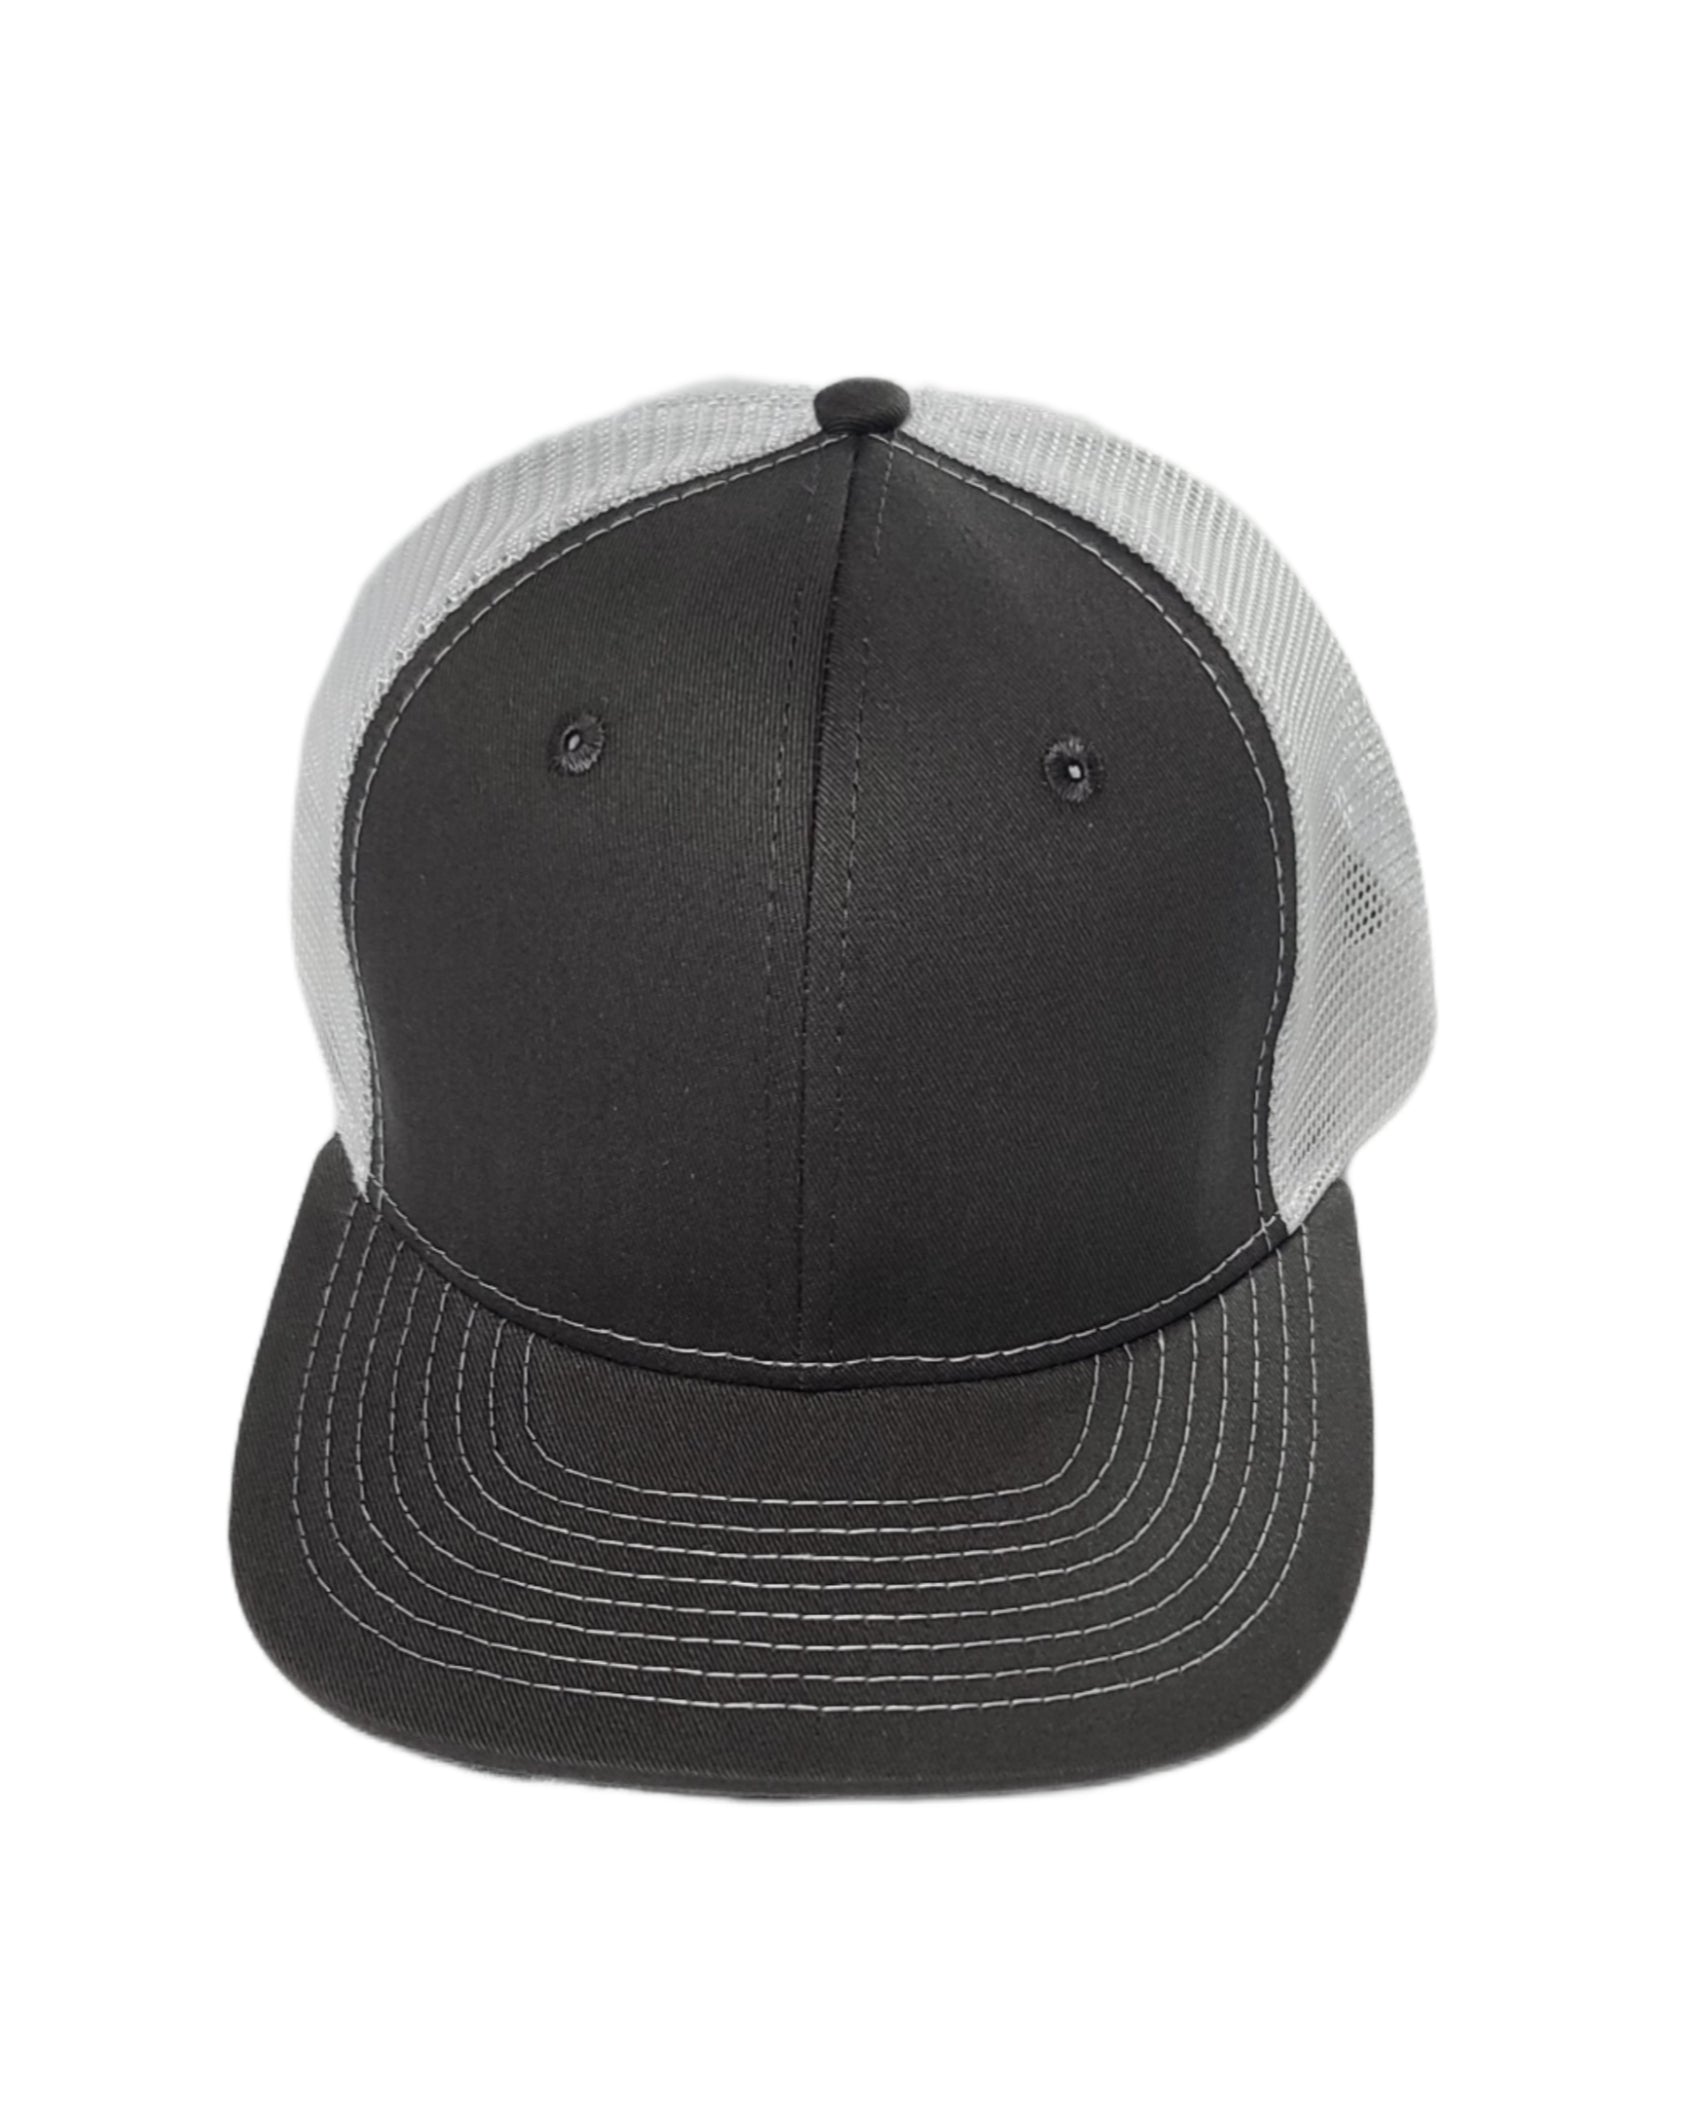 dark gray and white mesh trucker hat blank caps Calitrendz